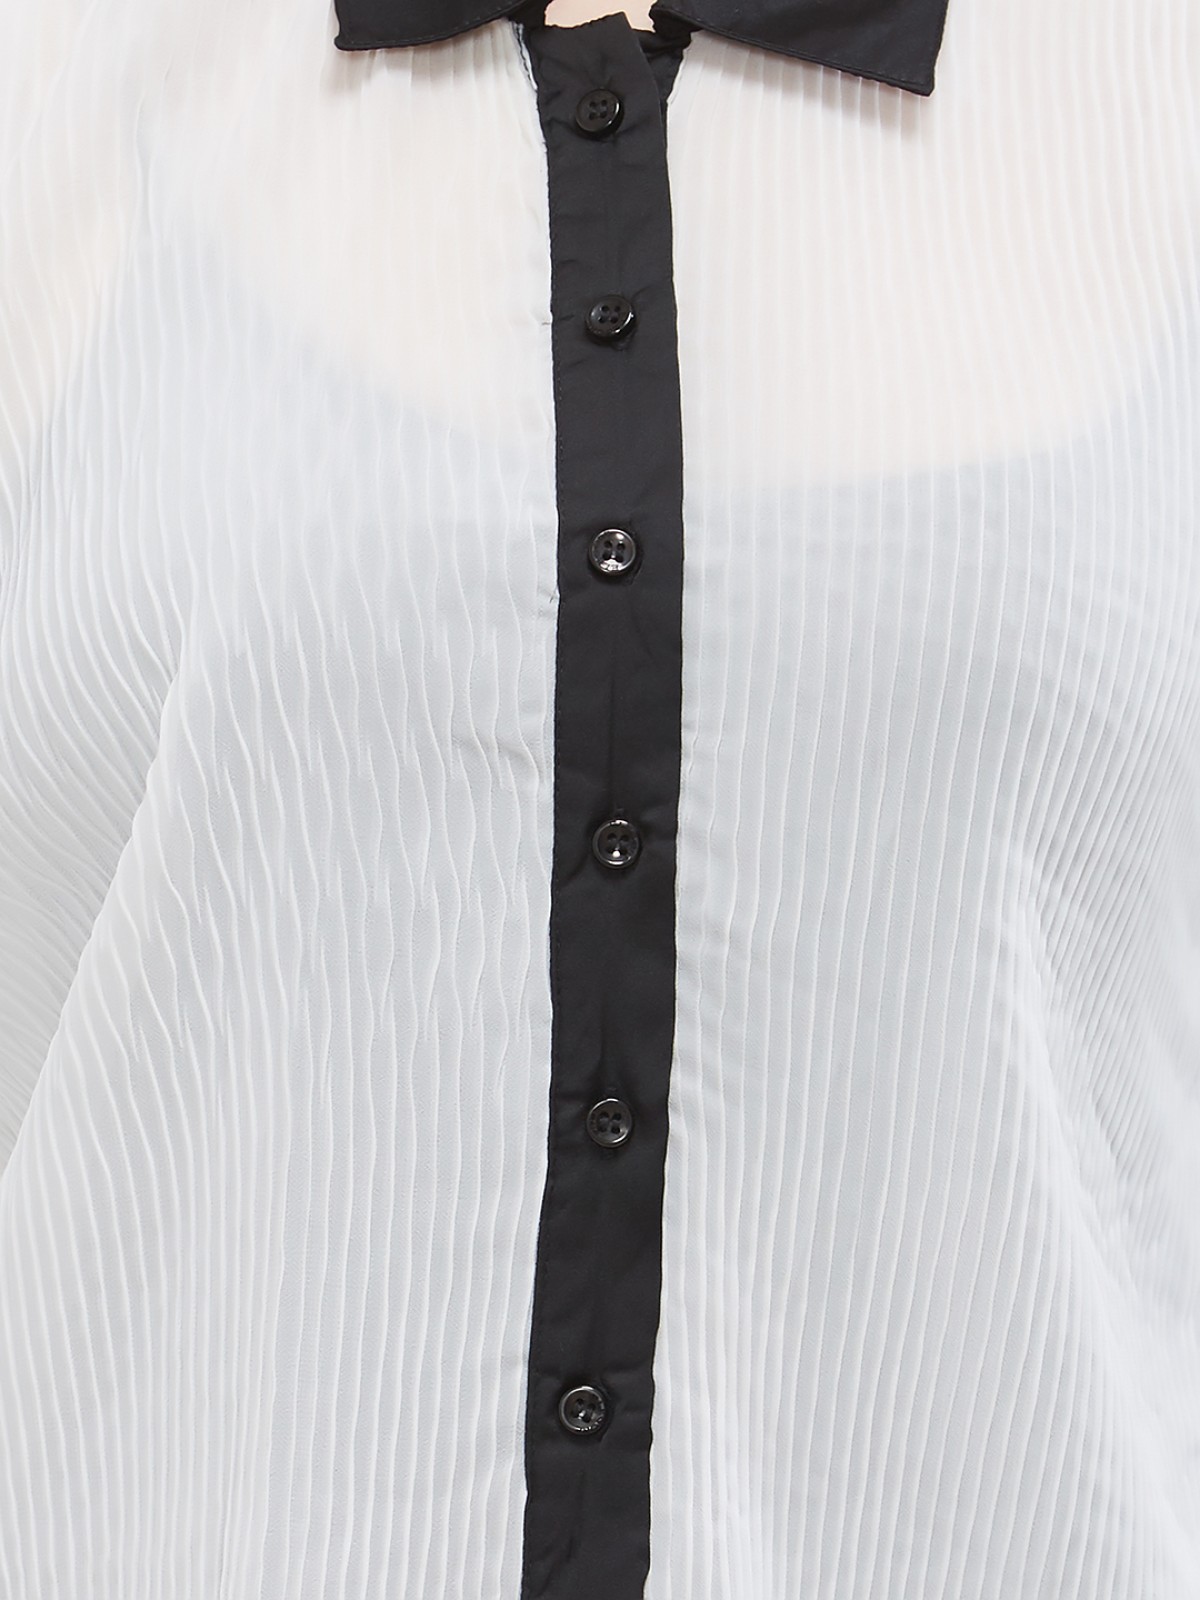 White Convertib Collar Short Sleeveless Shirt